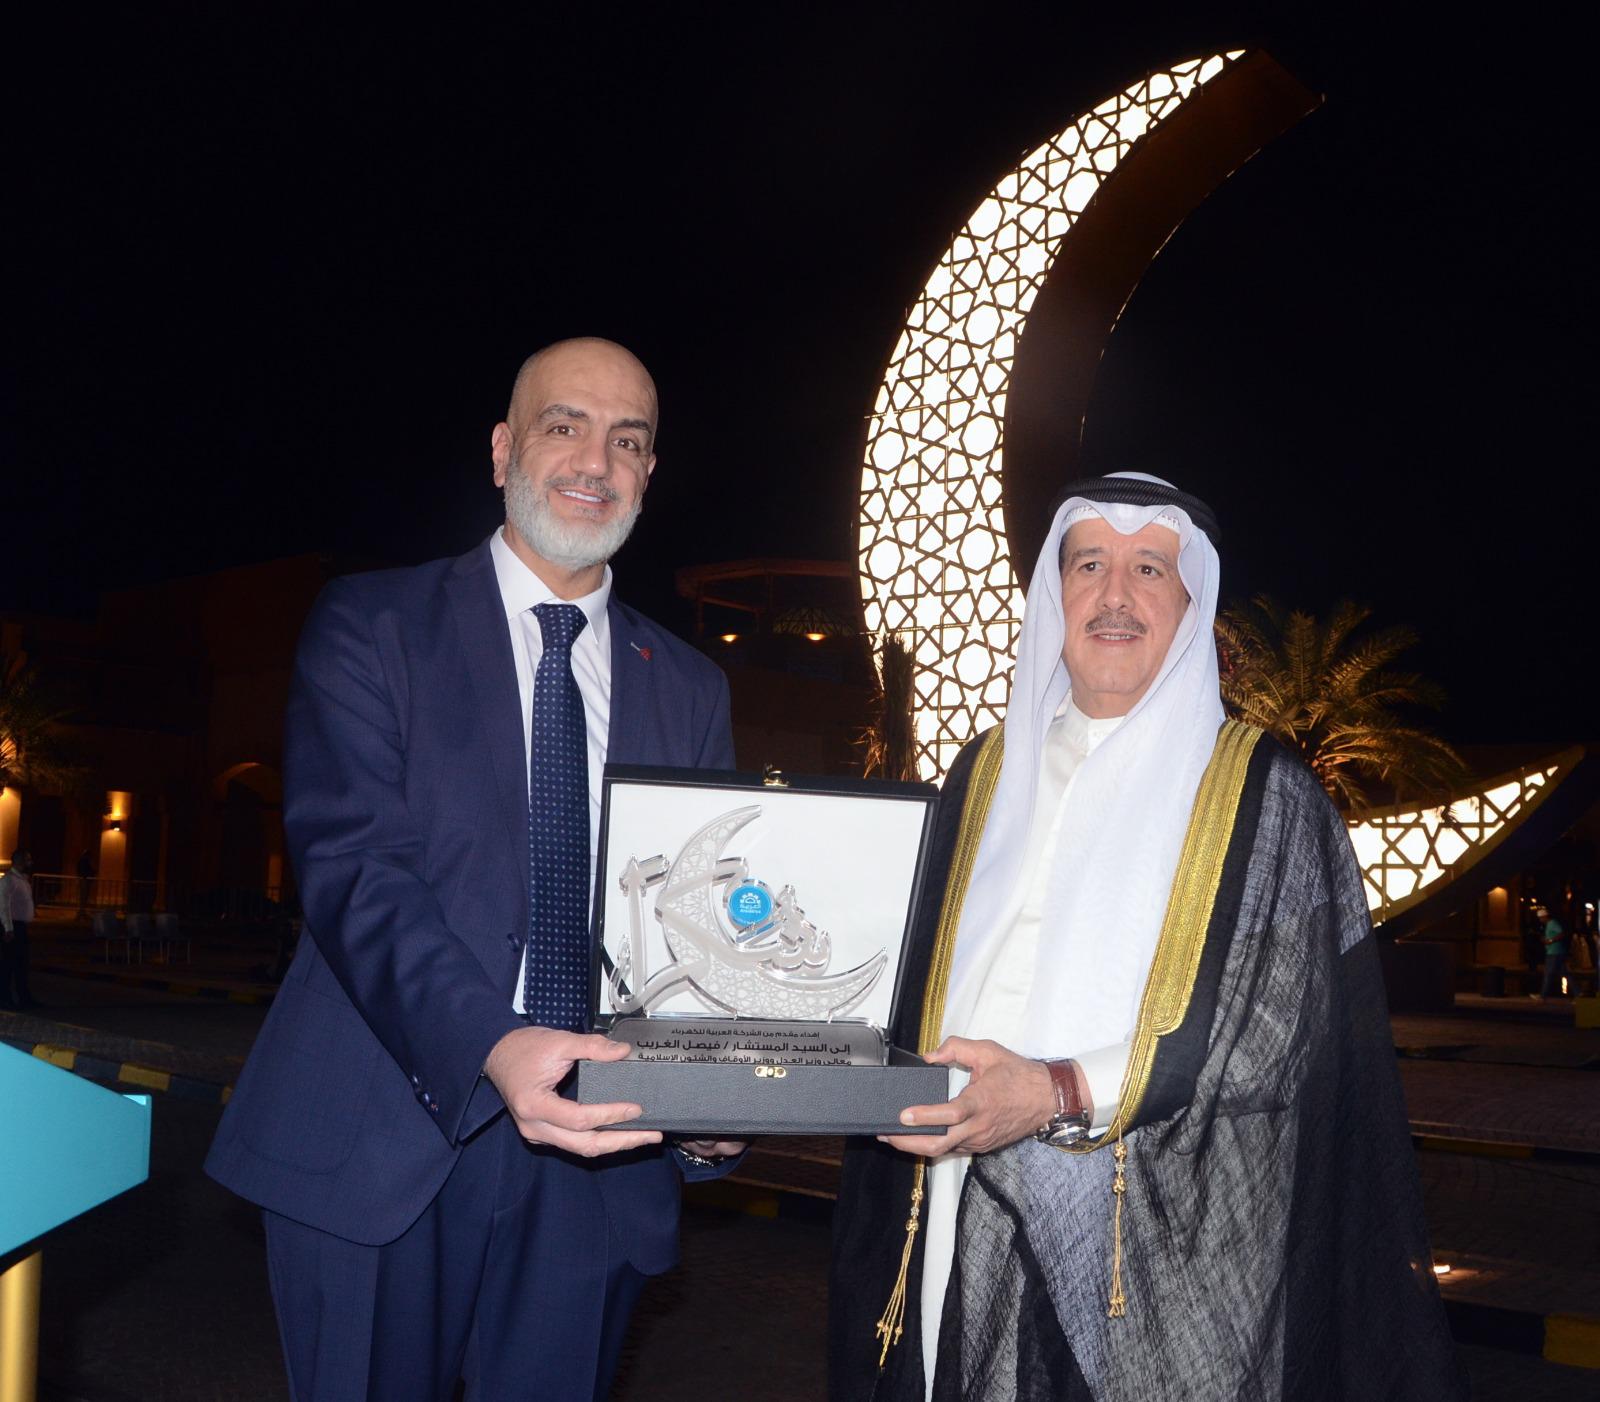  "الشركة العربية  للكهرباء" تطلق  أكبر مجسم هلال مضئ في العالم وتهديه لدولة الكويت  